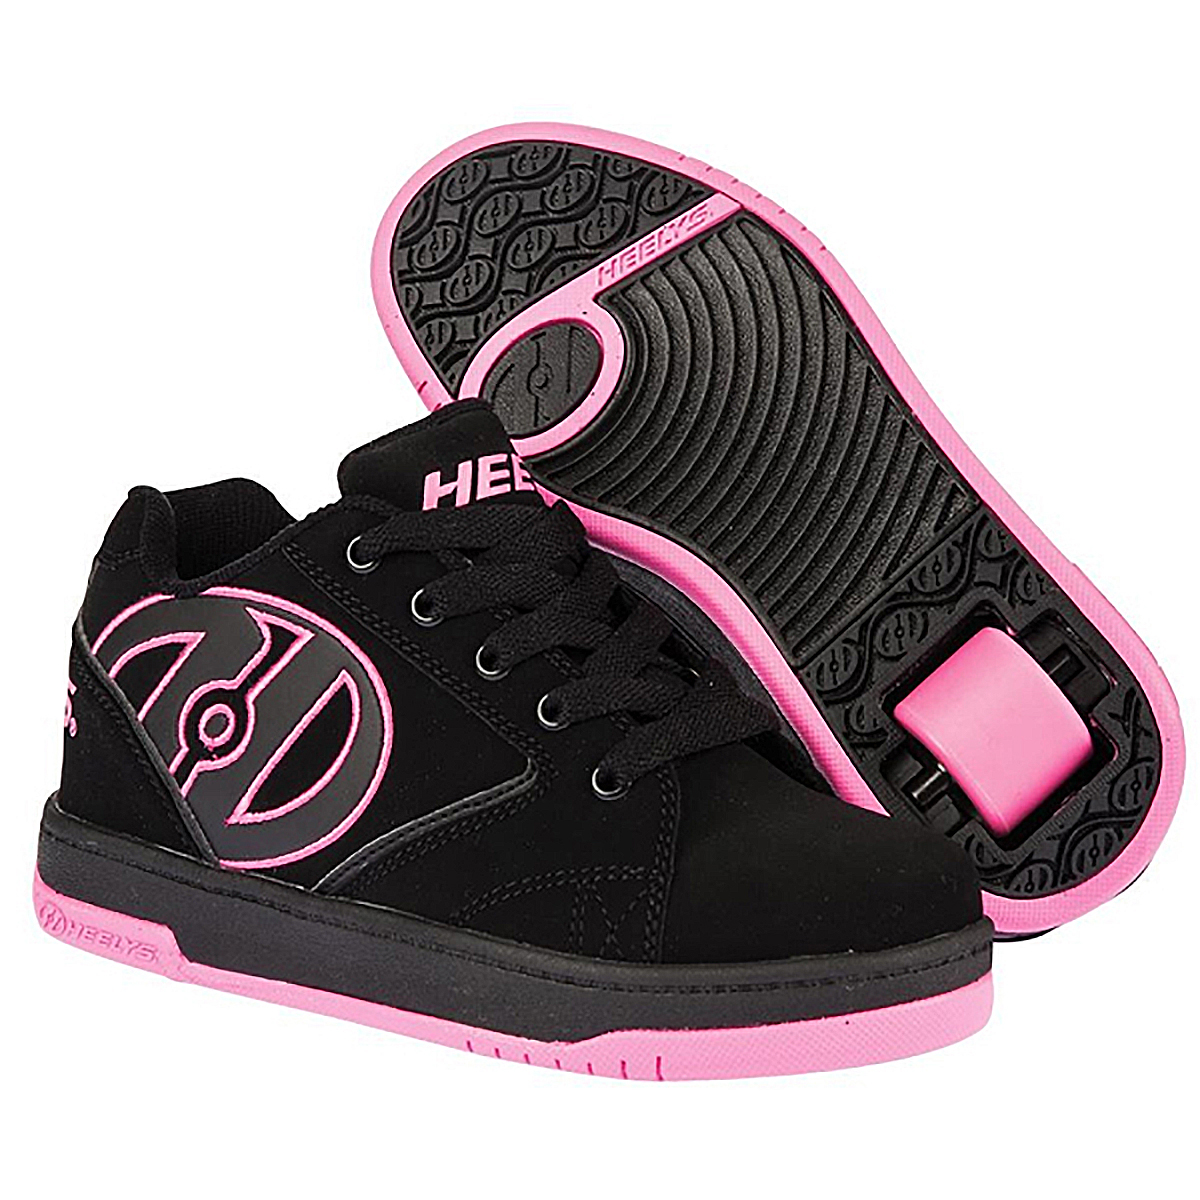 Кроссовки роликовые для девочки Heelys, цвет: черный, розовый. 770291. Размер 36,5 (35,5)